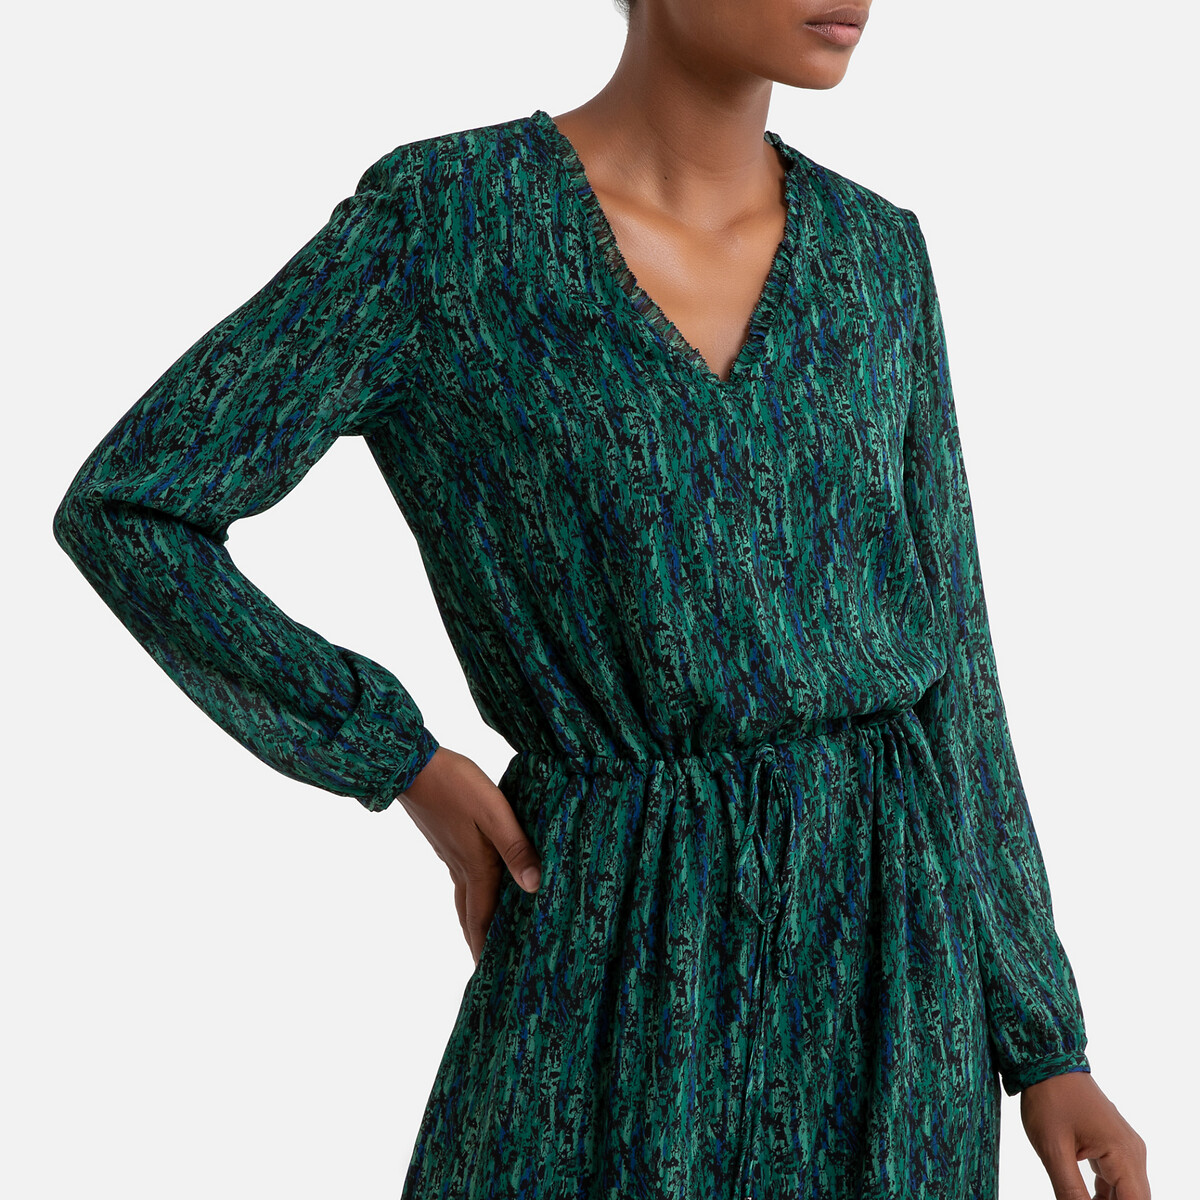 Платье La Redoute Из вуали с принтом длинное с длинными рукавами 40 (FR) - 46 (RUS) зеленый, размер 40 (FR) - 46 (RUS) Из вуали с принтом длинное с длинными рукавами 40 (FR) - 46 (RUS) зеленый - фото 2